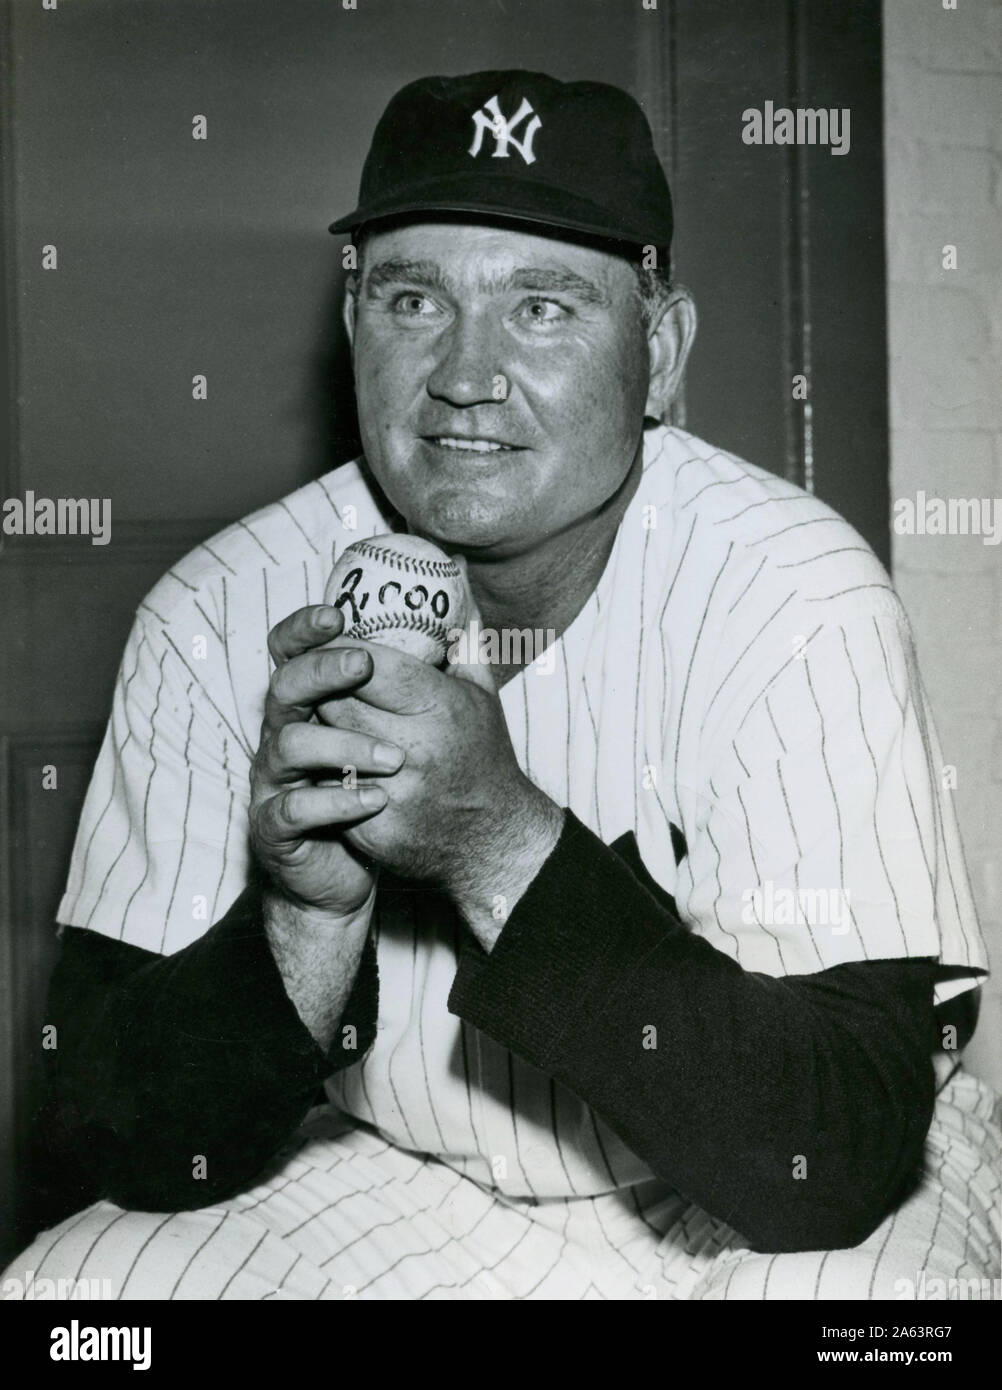 Vintage schwarz-weiß Foto von New York Yankees player Johnny Mize Holding eine Kugel zum Gedenken an seine 2000 Hit in den grossen Ligen ca. 1950. Stockfoto